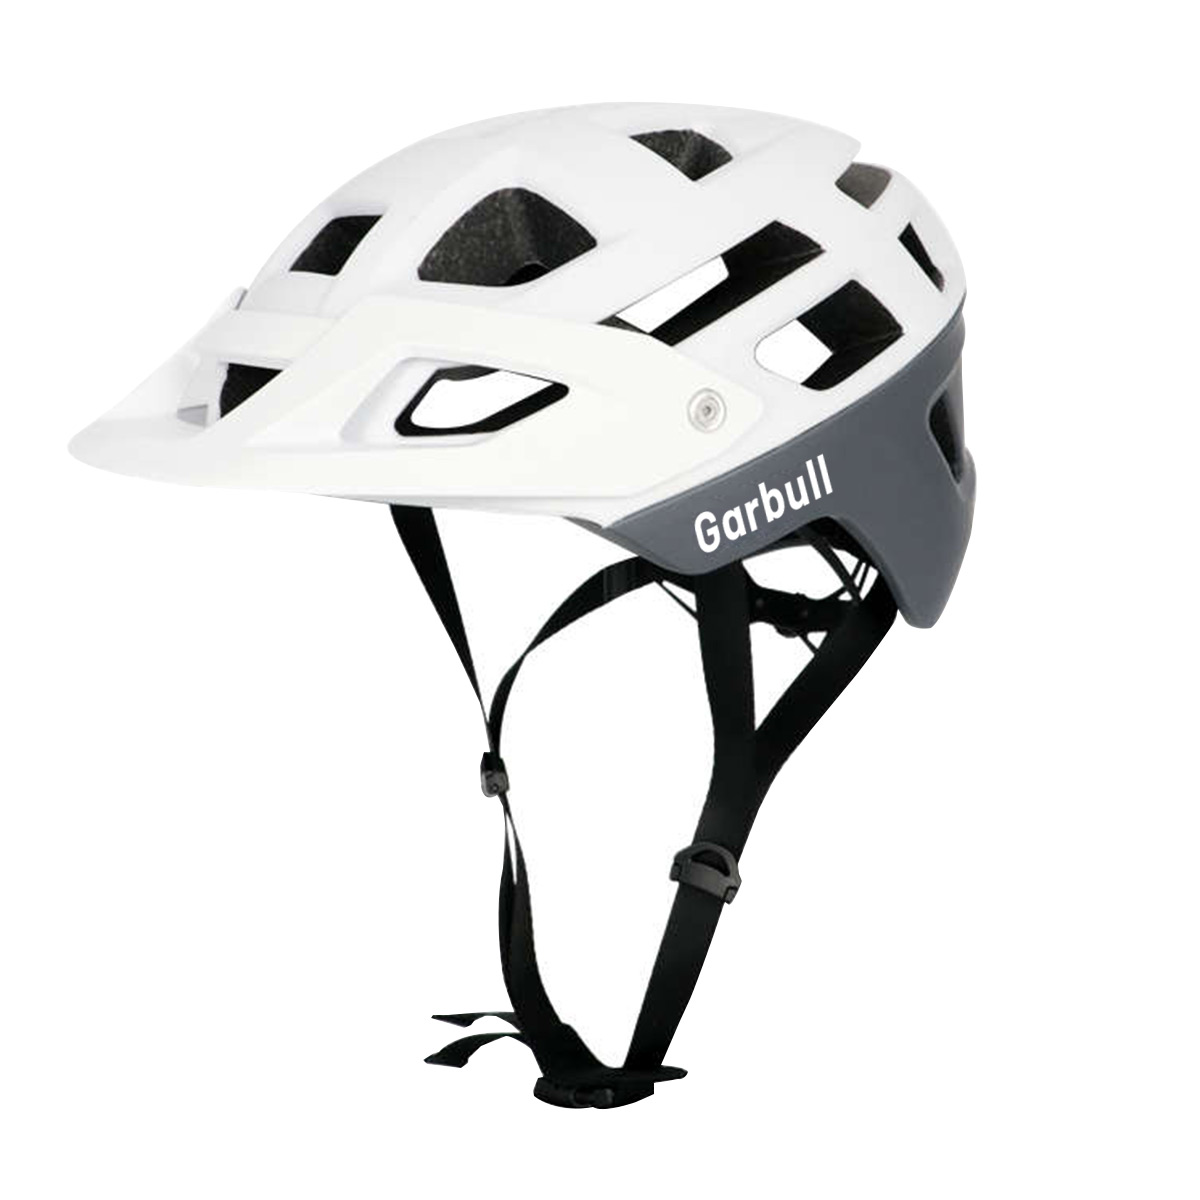 55-59 cm, Mountainbike, cm weiß) Helm PROSCENIC